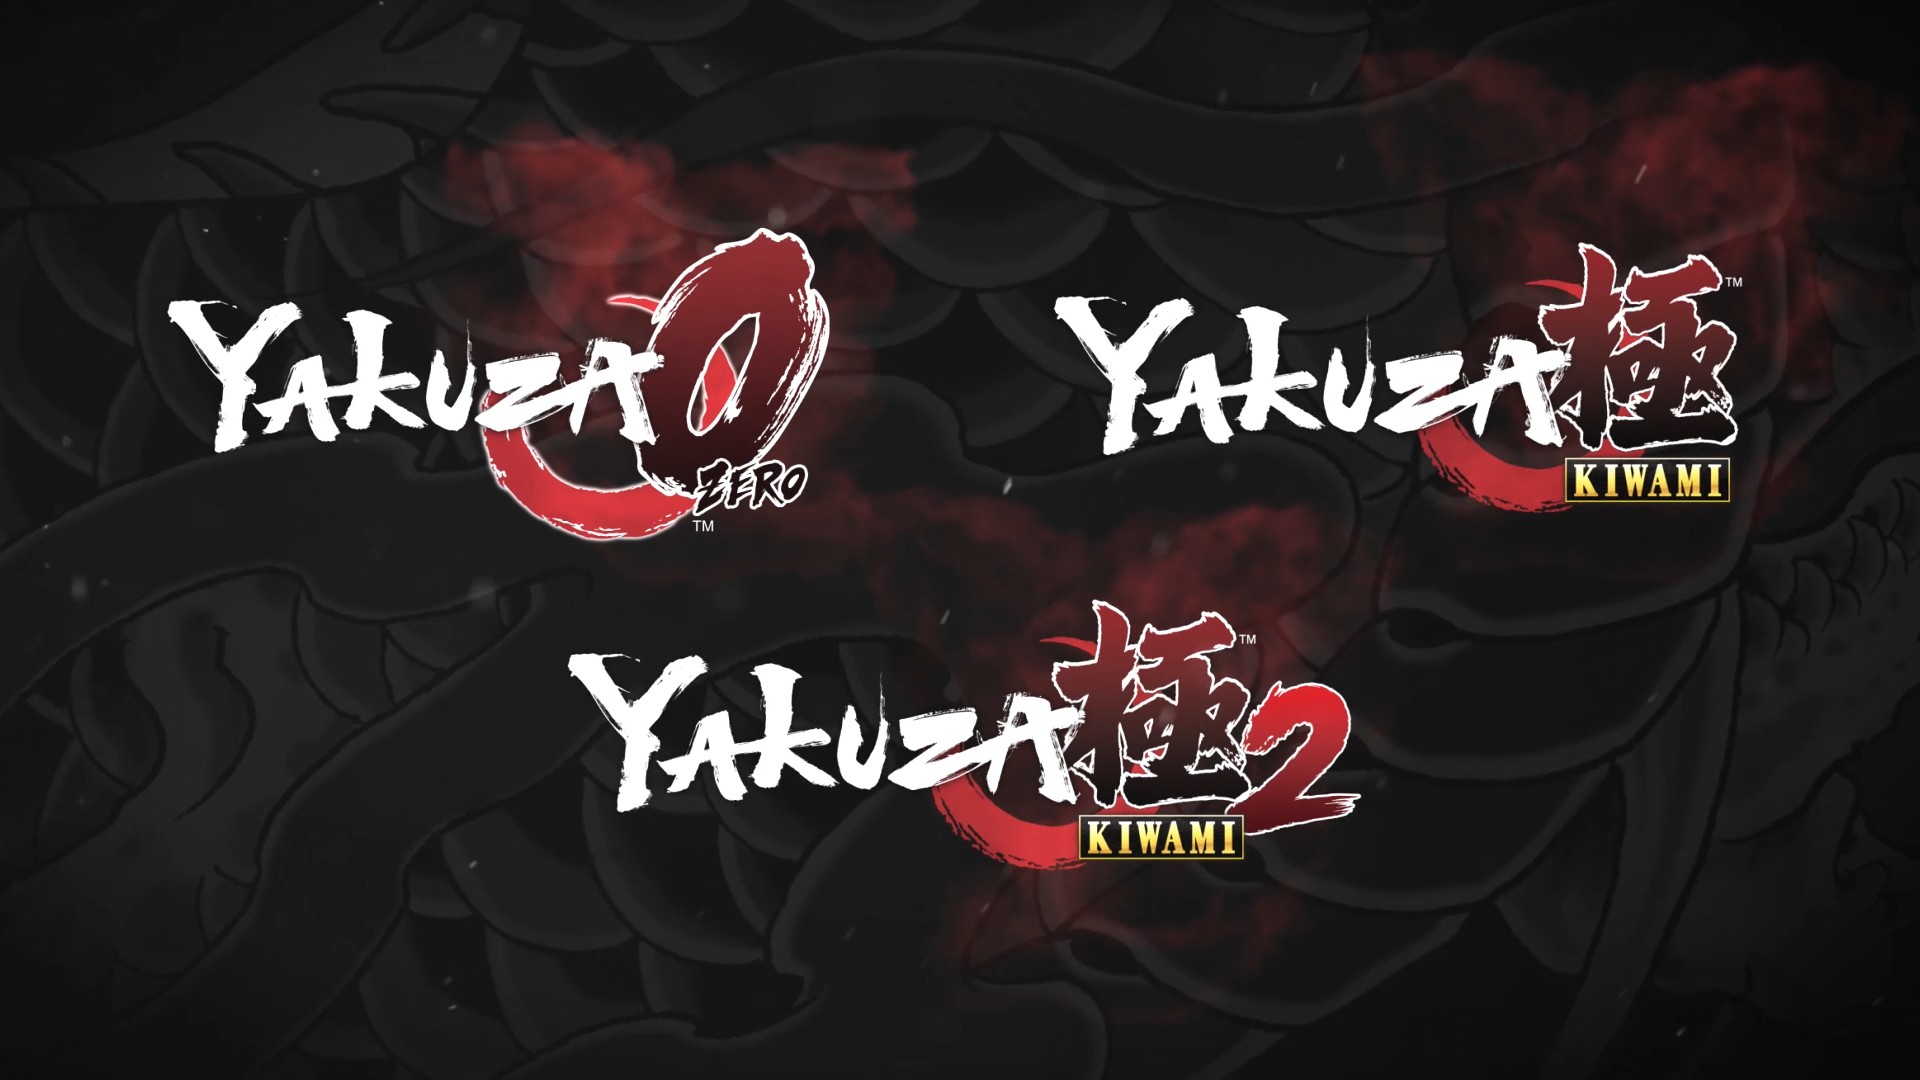 yakuza kiwami xbox release date